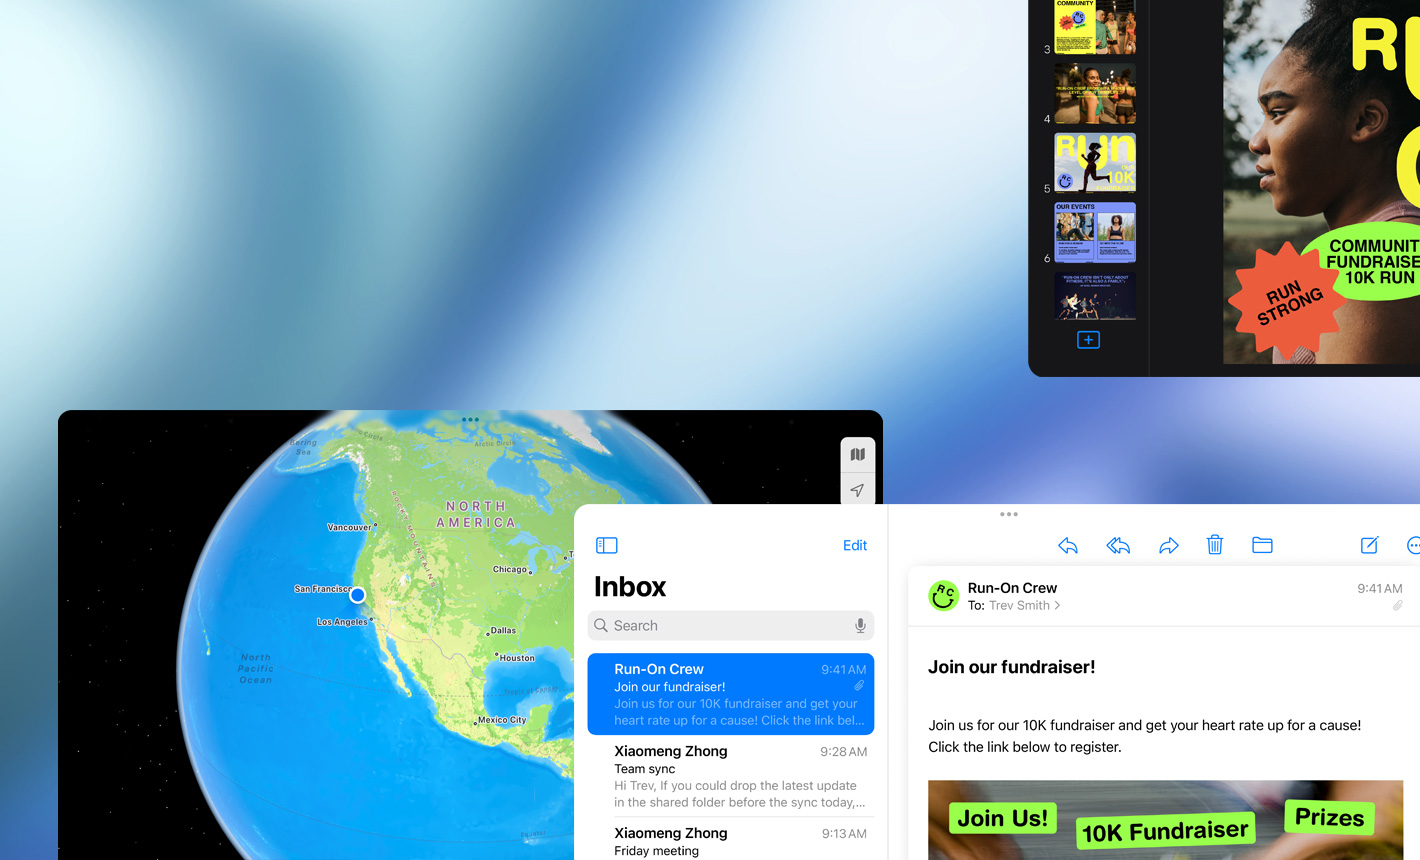 Flere skærme med forskellige apps i brug, vandret position